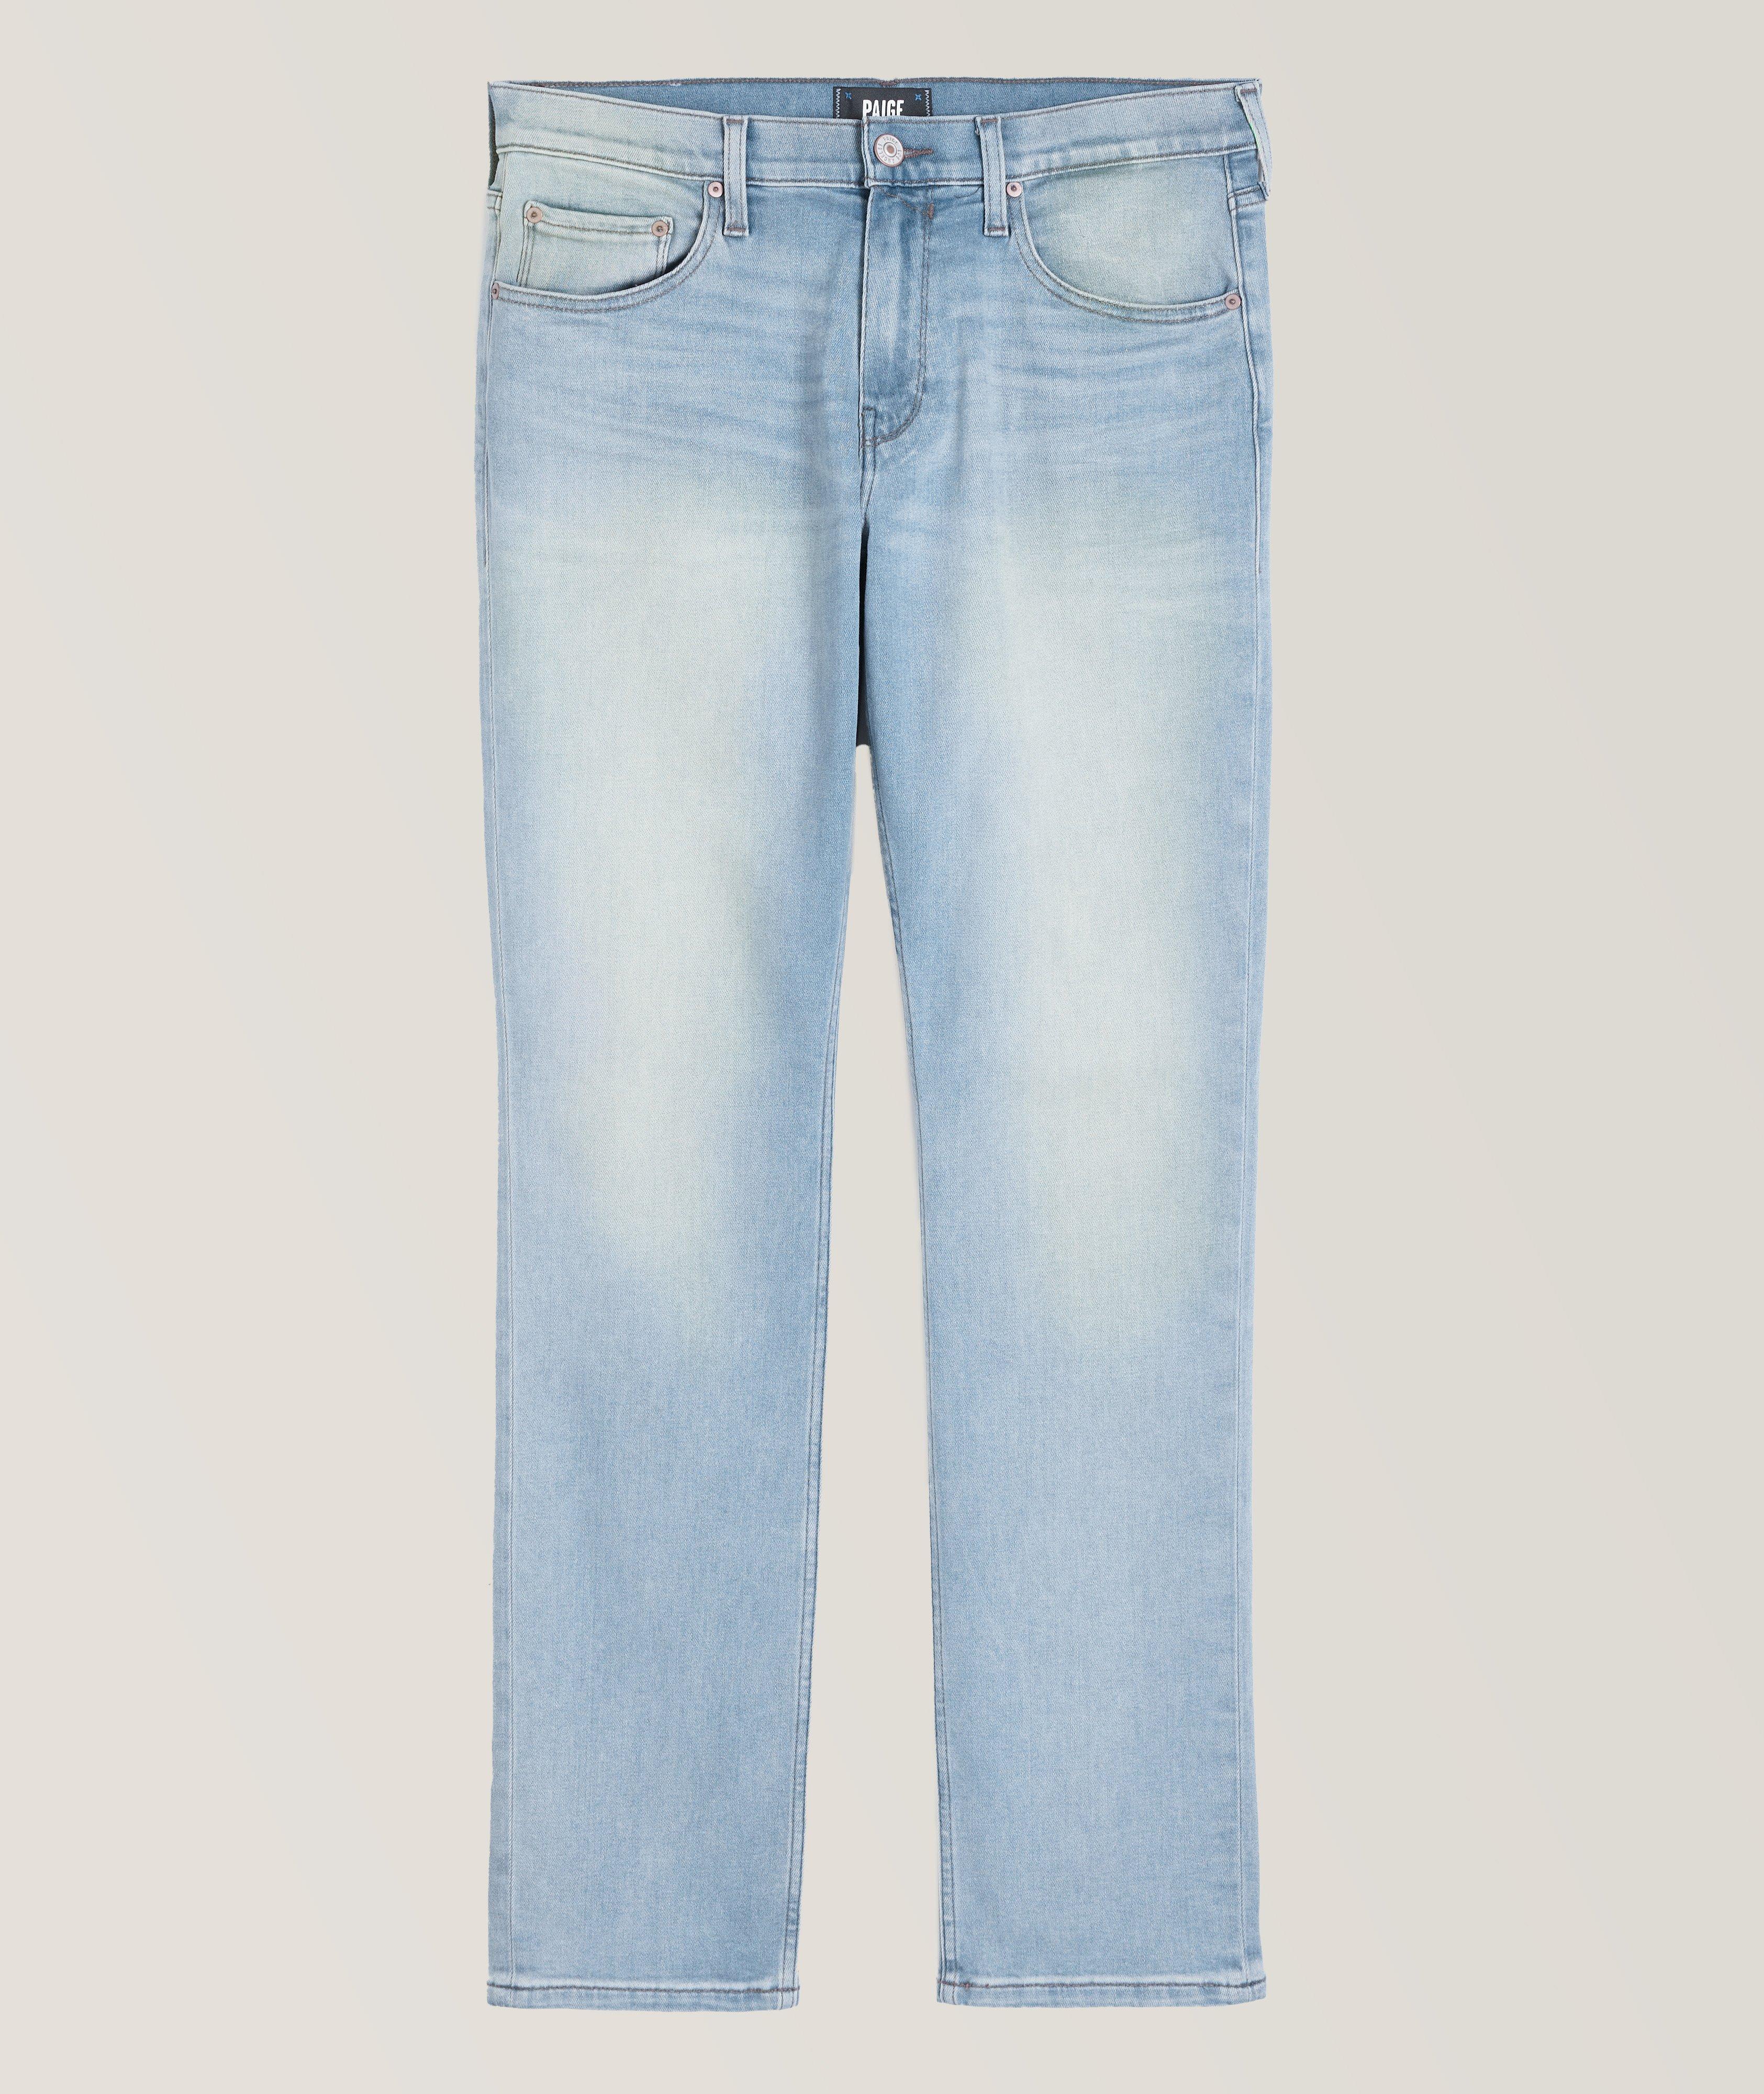 Federal Transcend Vintage Slim Fit Jeans image 0